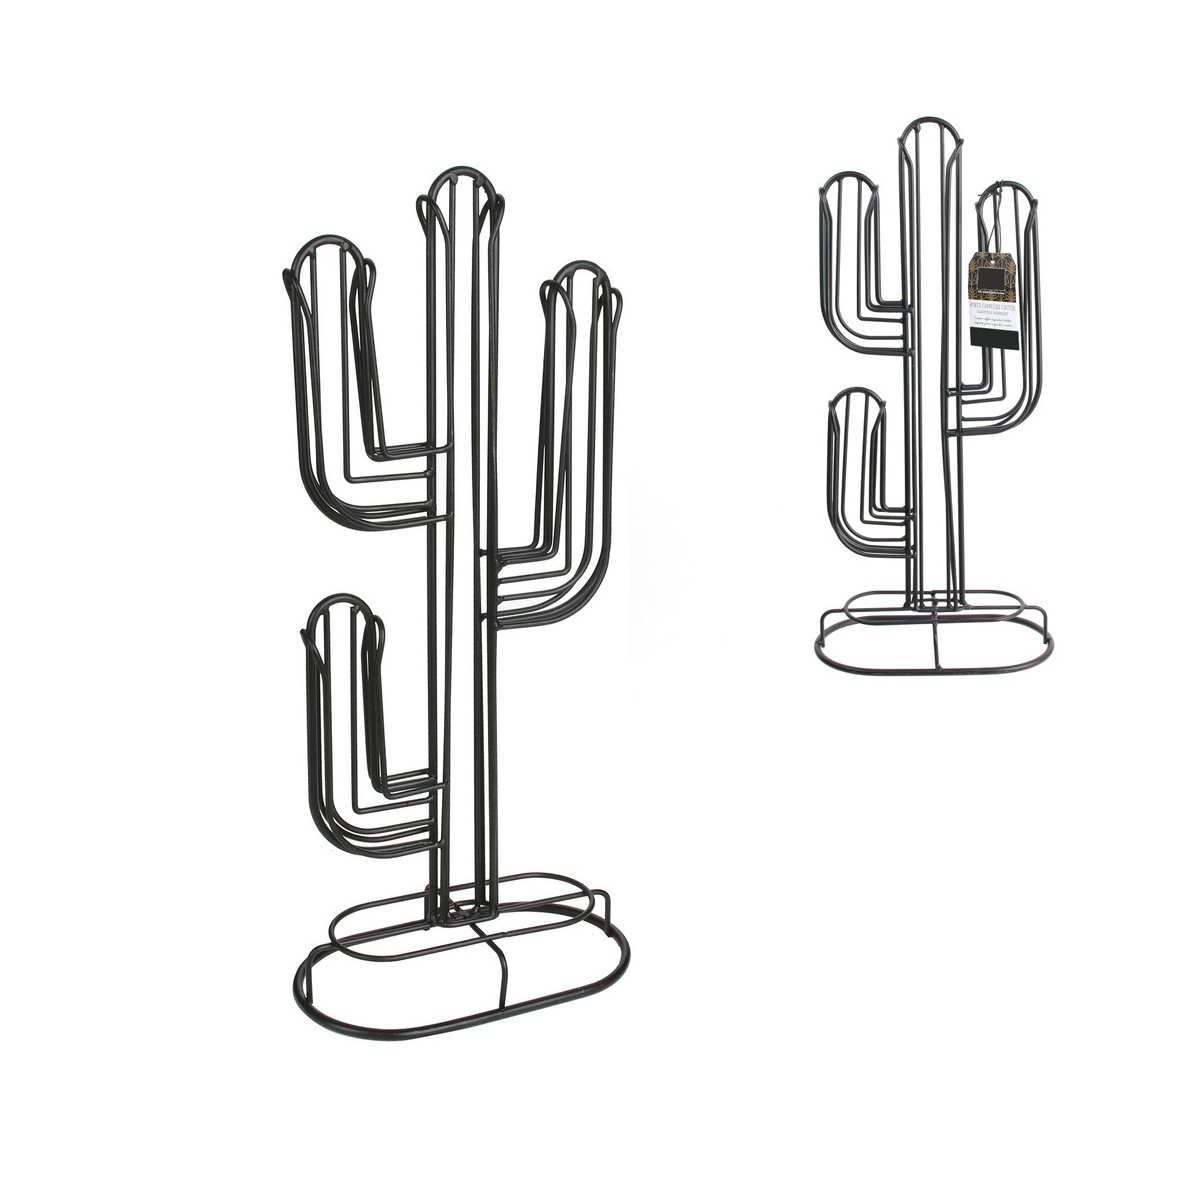 Porte Capsules Filaire Cactus Dore – Virgin Megastore